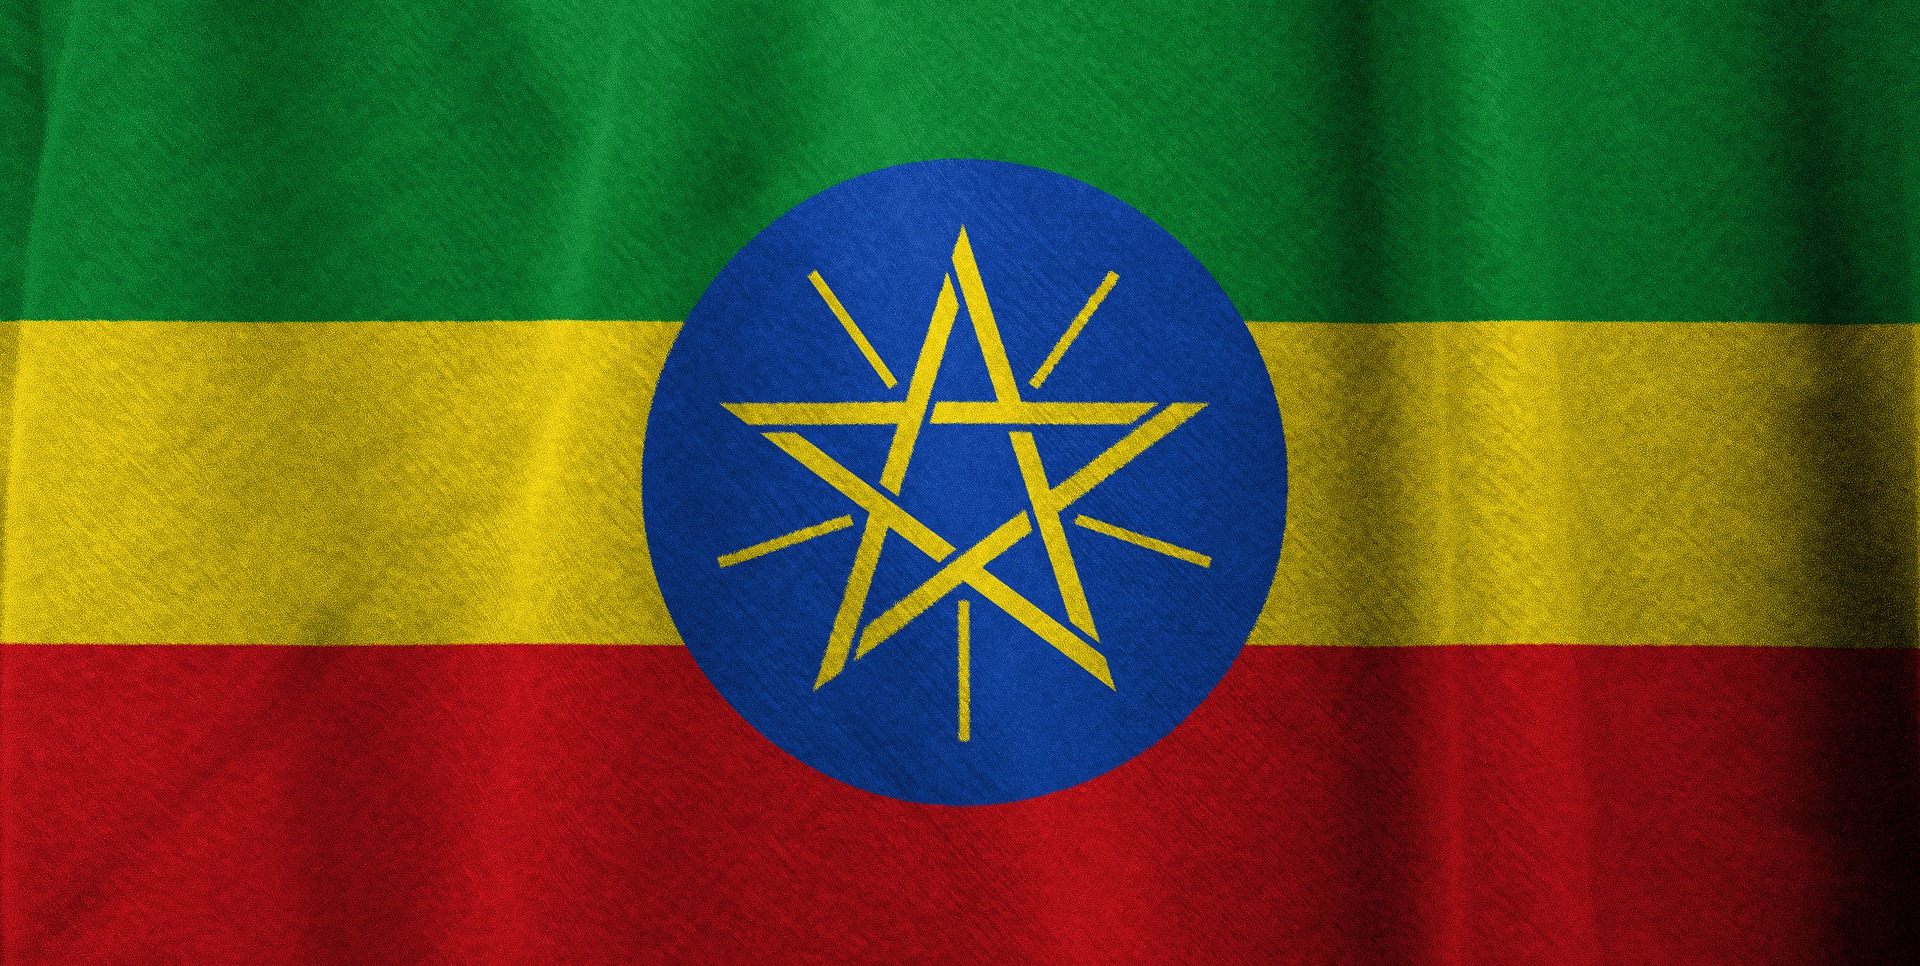 ethiopia-gfb5550fa1_1920.jpg